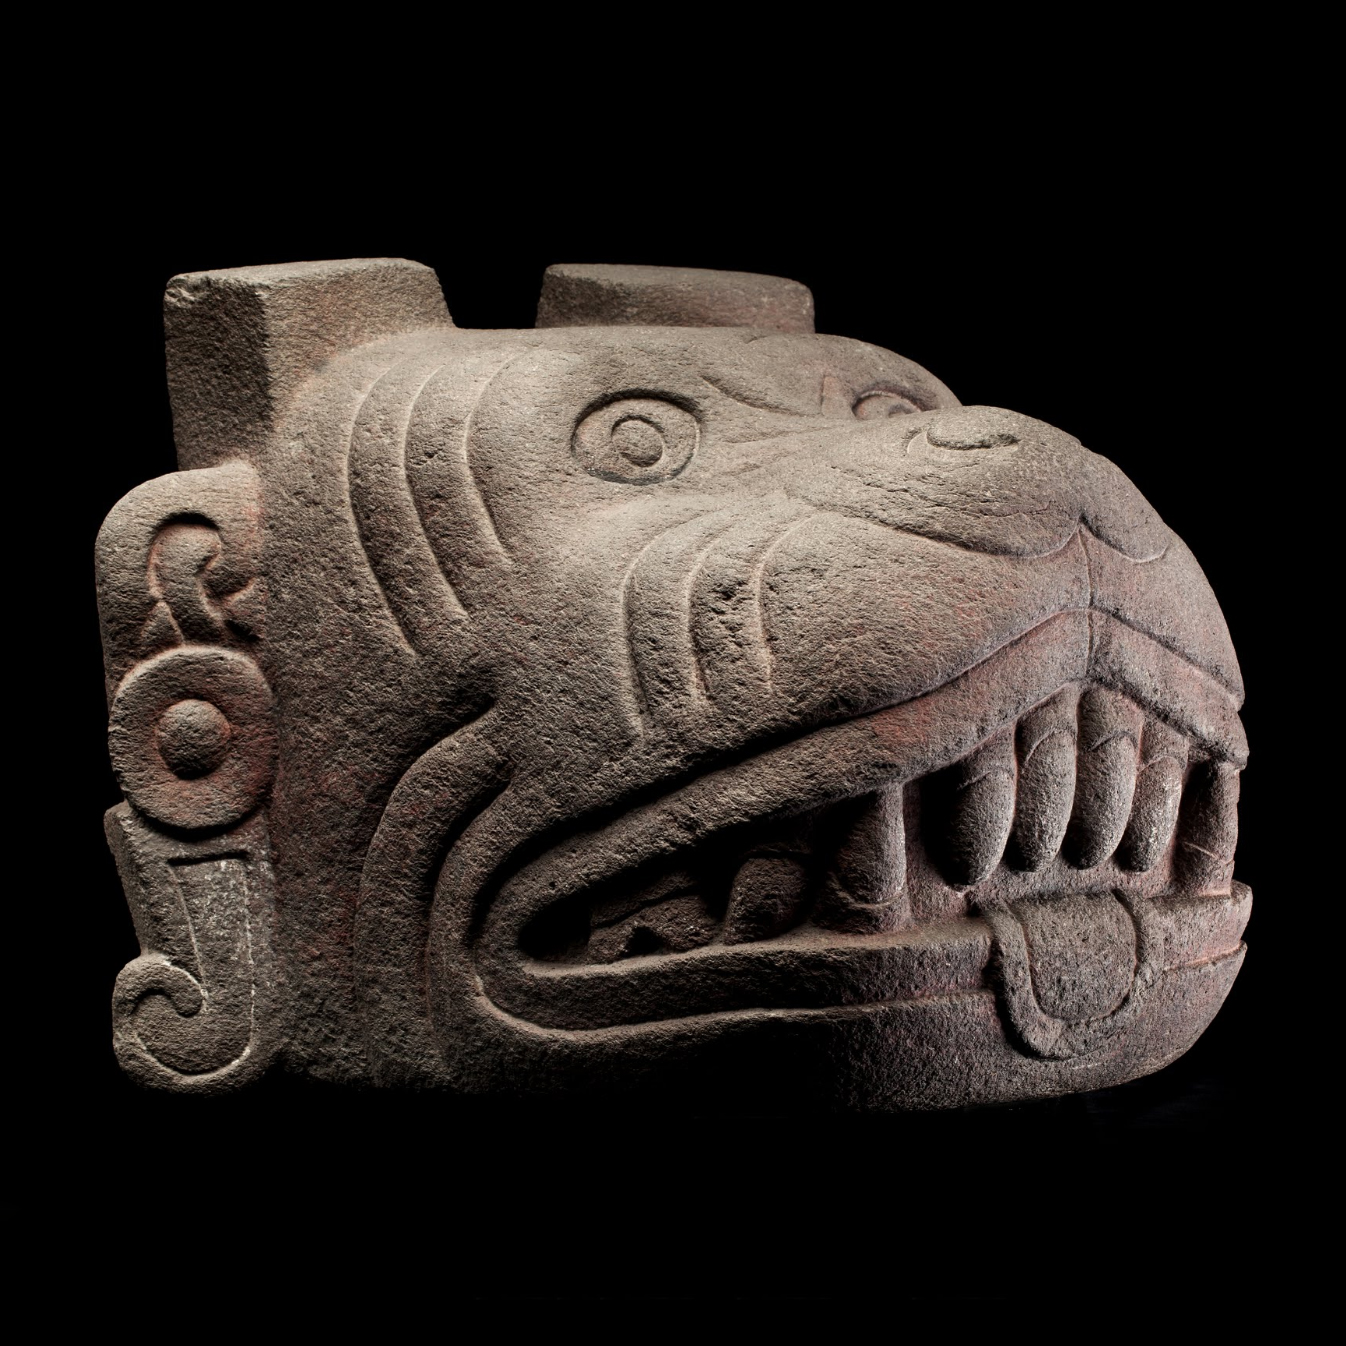 Шолотль. Ацтеки, 1325-1521 гг. н.э. Коллекция Museo Nacional de Antropología, México.